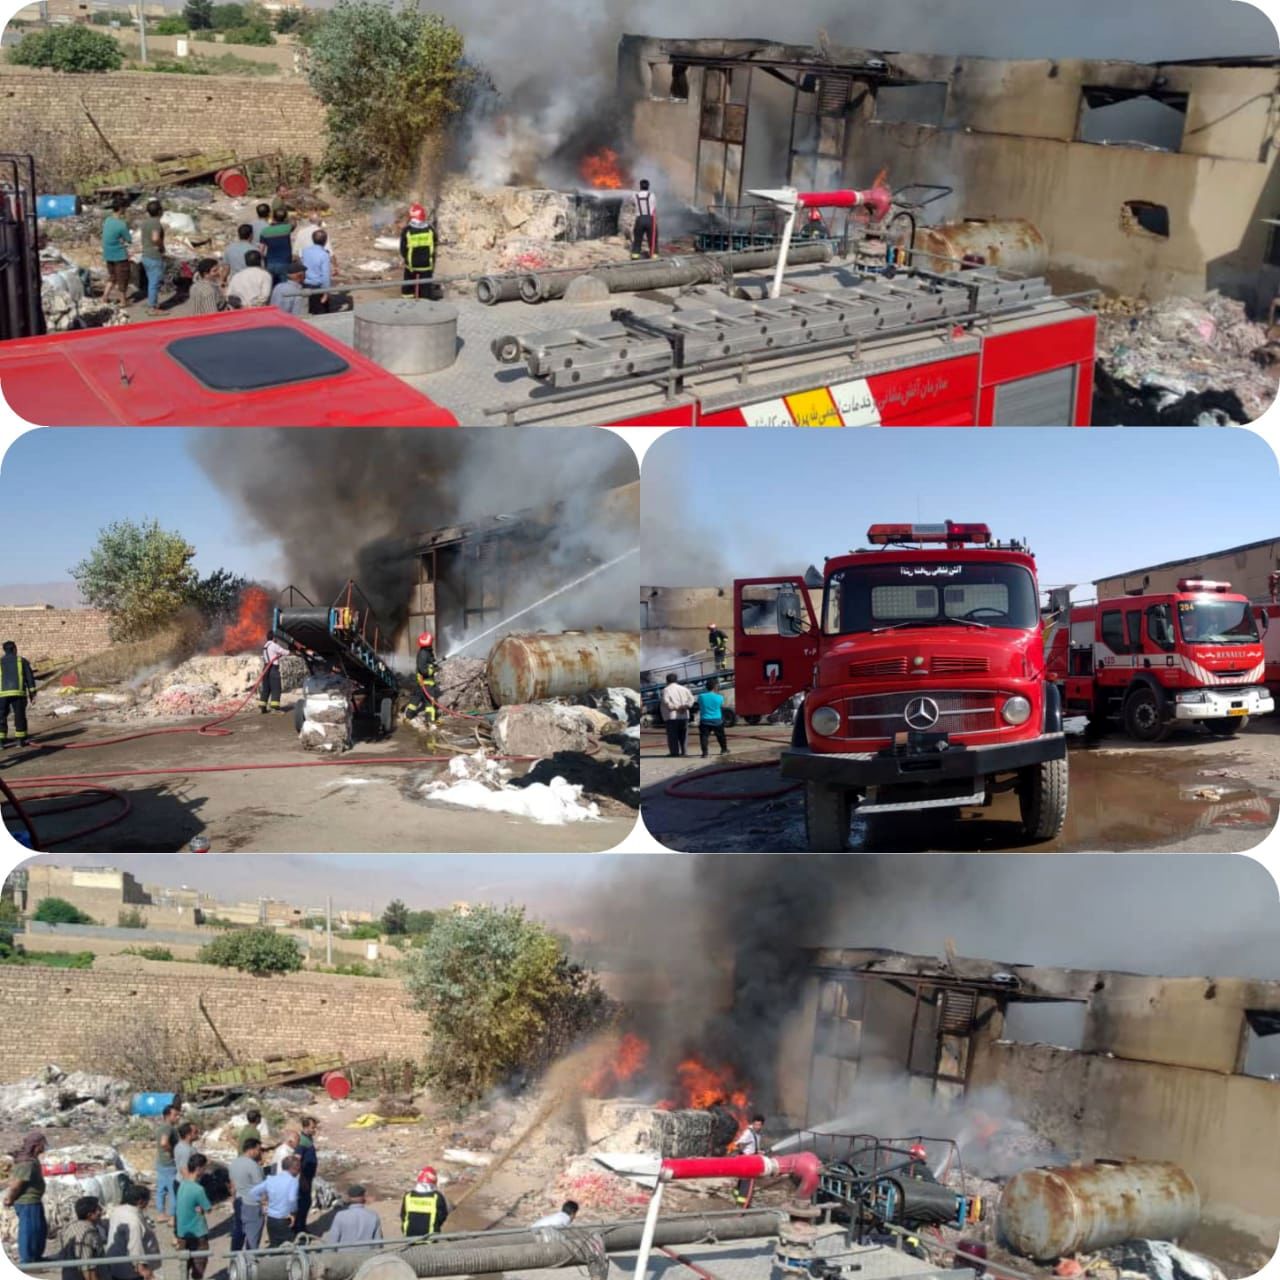 وقوع آتش سوزی در کارگاه حلاجی الیاف کاشان/ اعزام چهار ایستگاه آتش نشانی